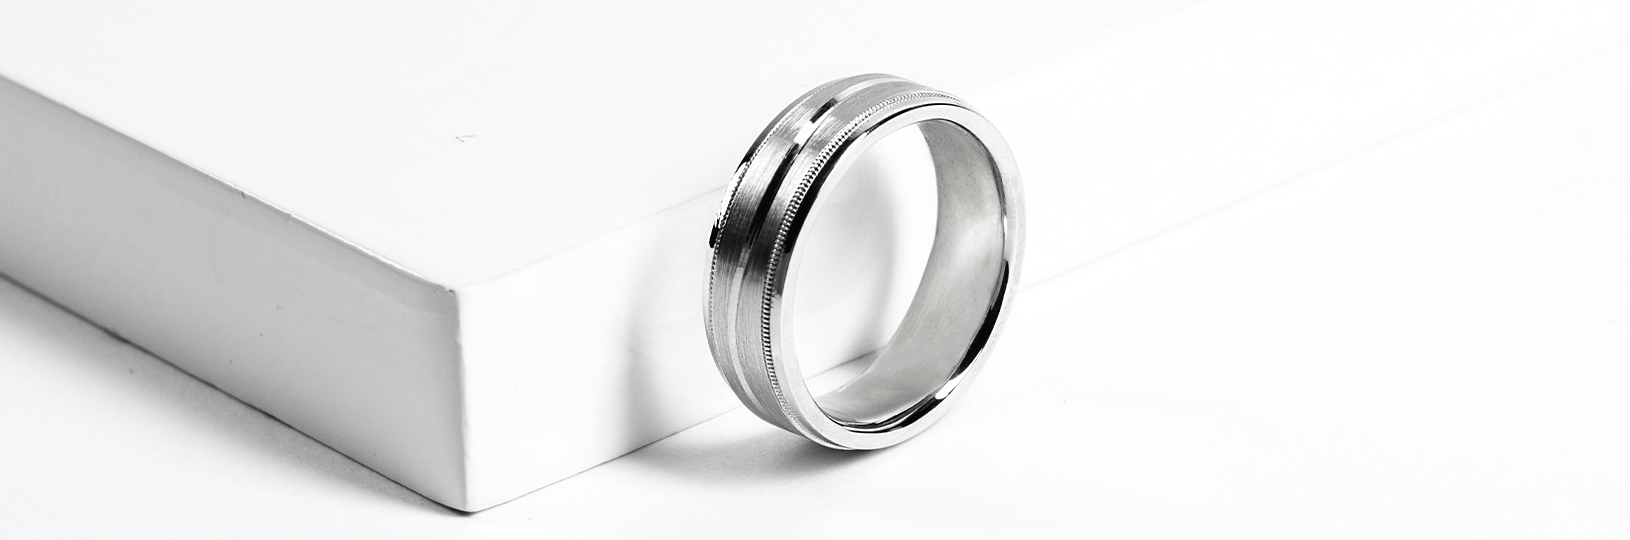 Men's tungsten wedding ring